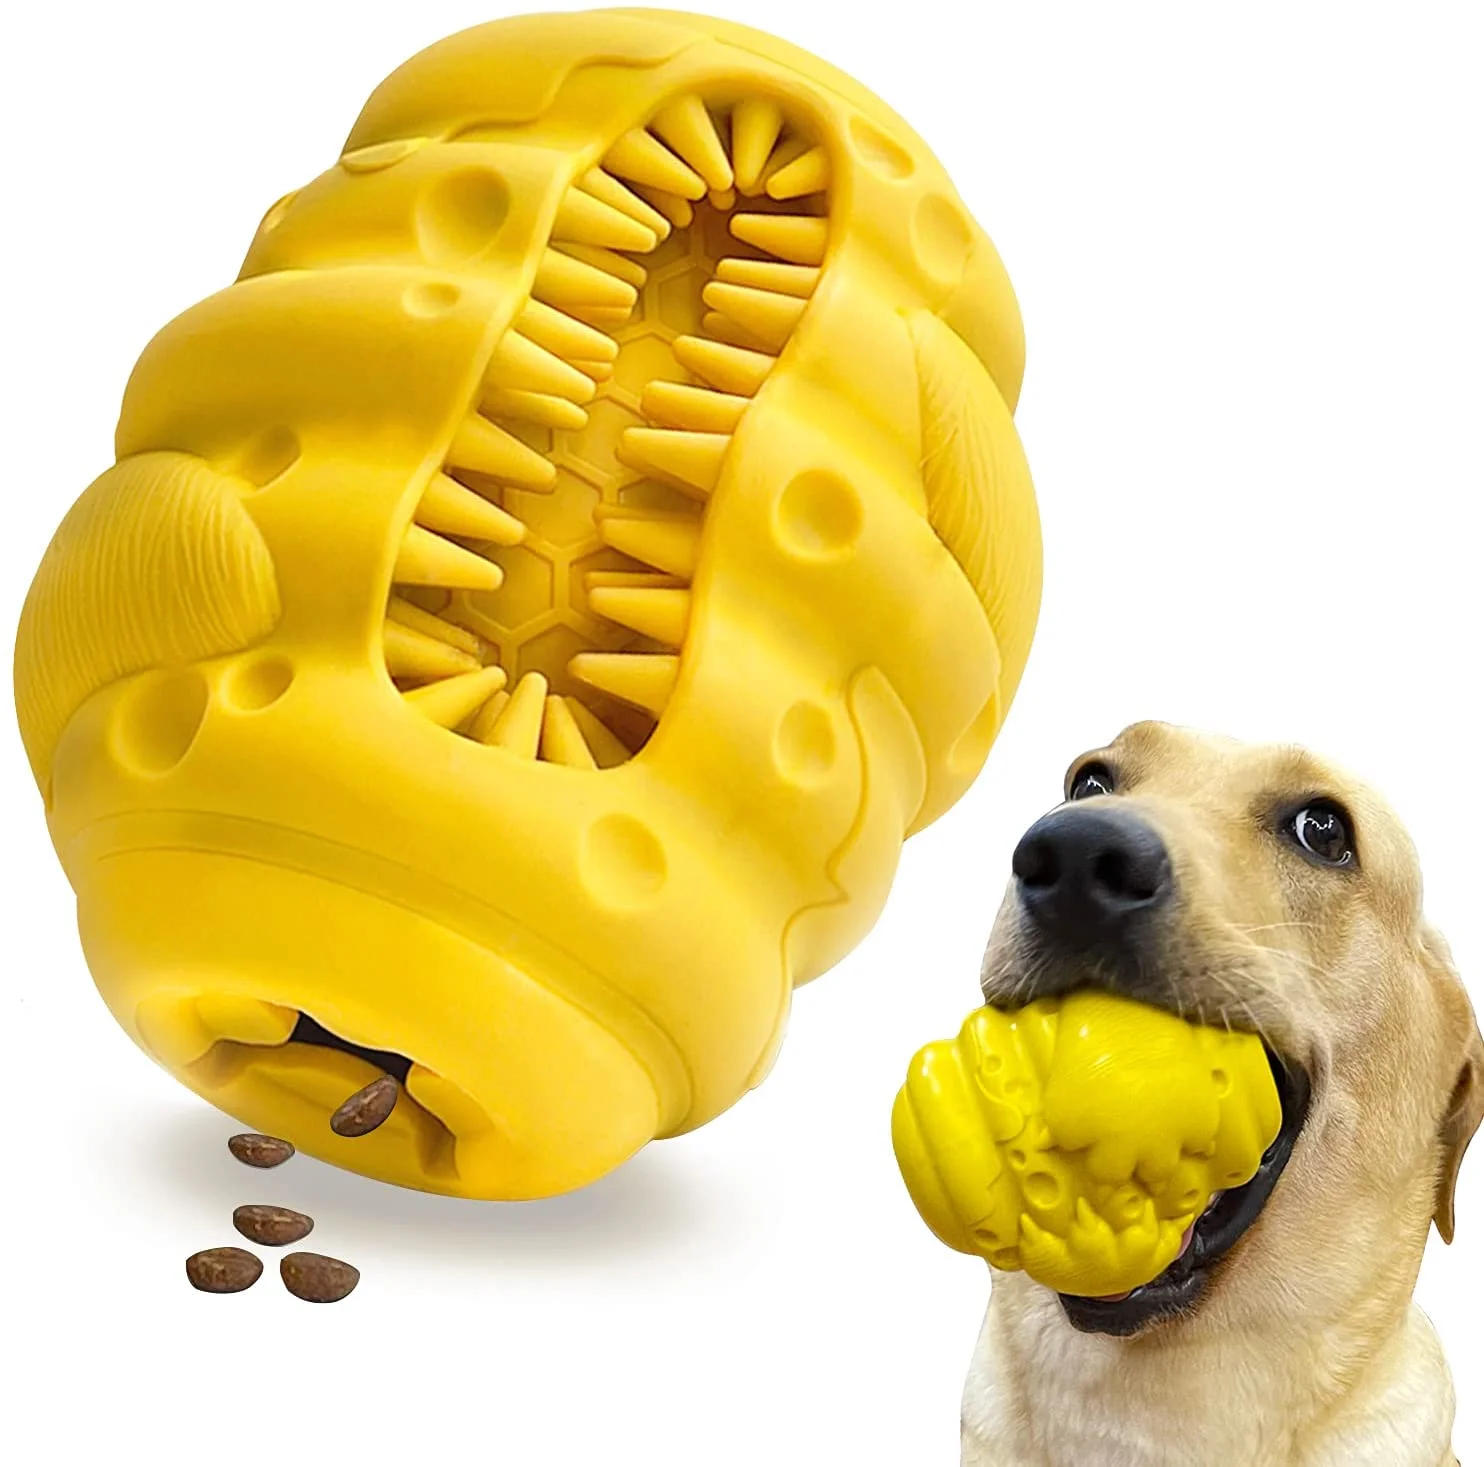 

Жевательные игрушки для собак, агрессивные жевательные игрушки для собак крупных и средних пород, игрушки-головоломки для собак, интеракти...